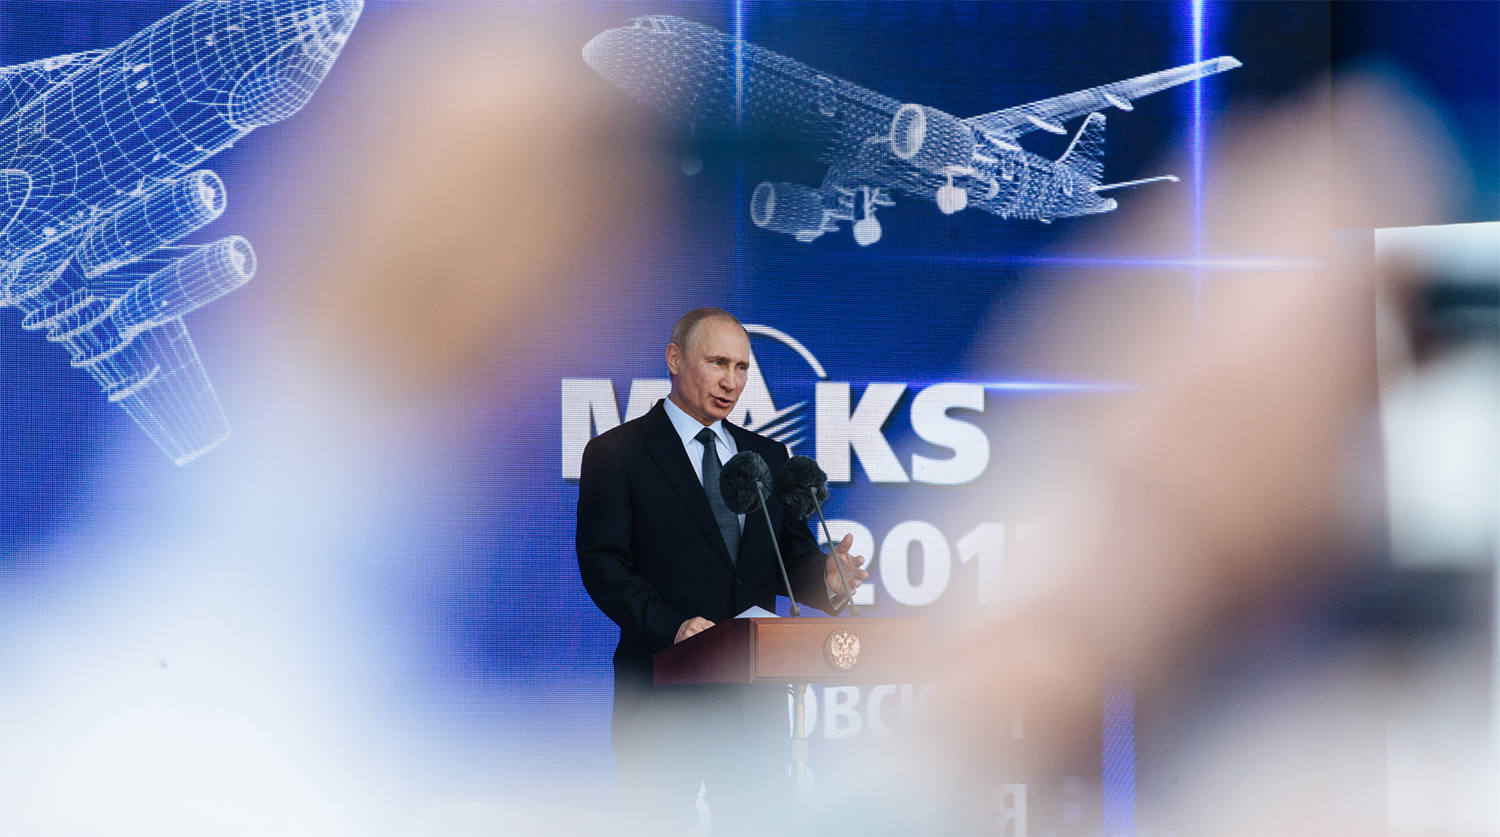 Президент России Владимир Путин во время посещения авиасалона МАКС-2017 в подмосковном Жуковском, 18 июля 2017 года